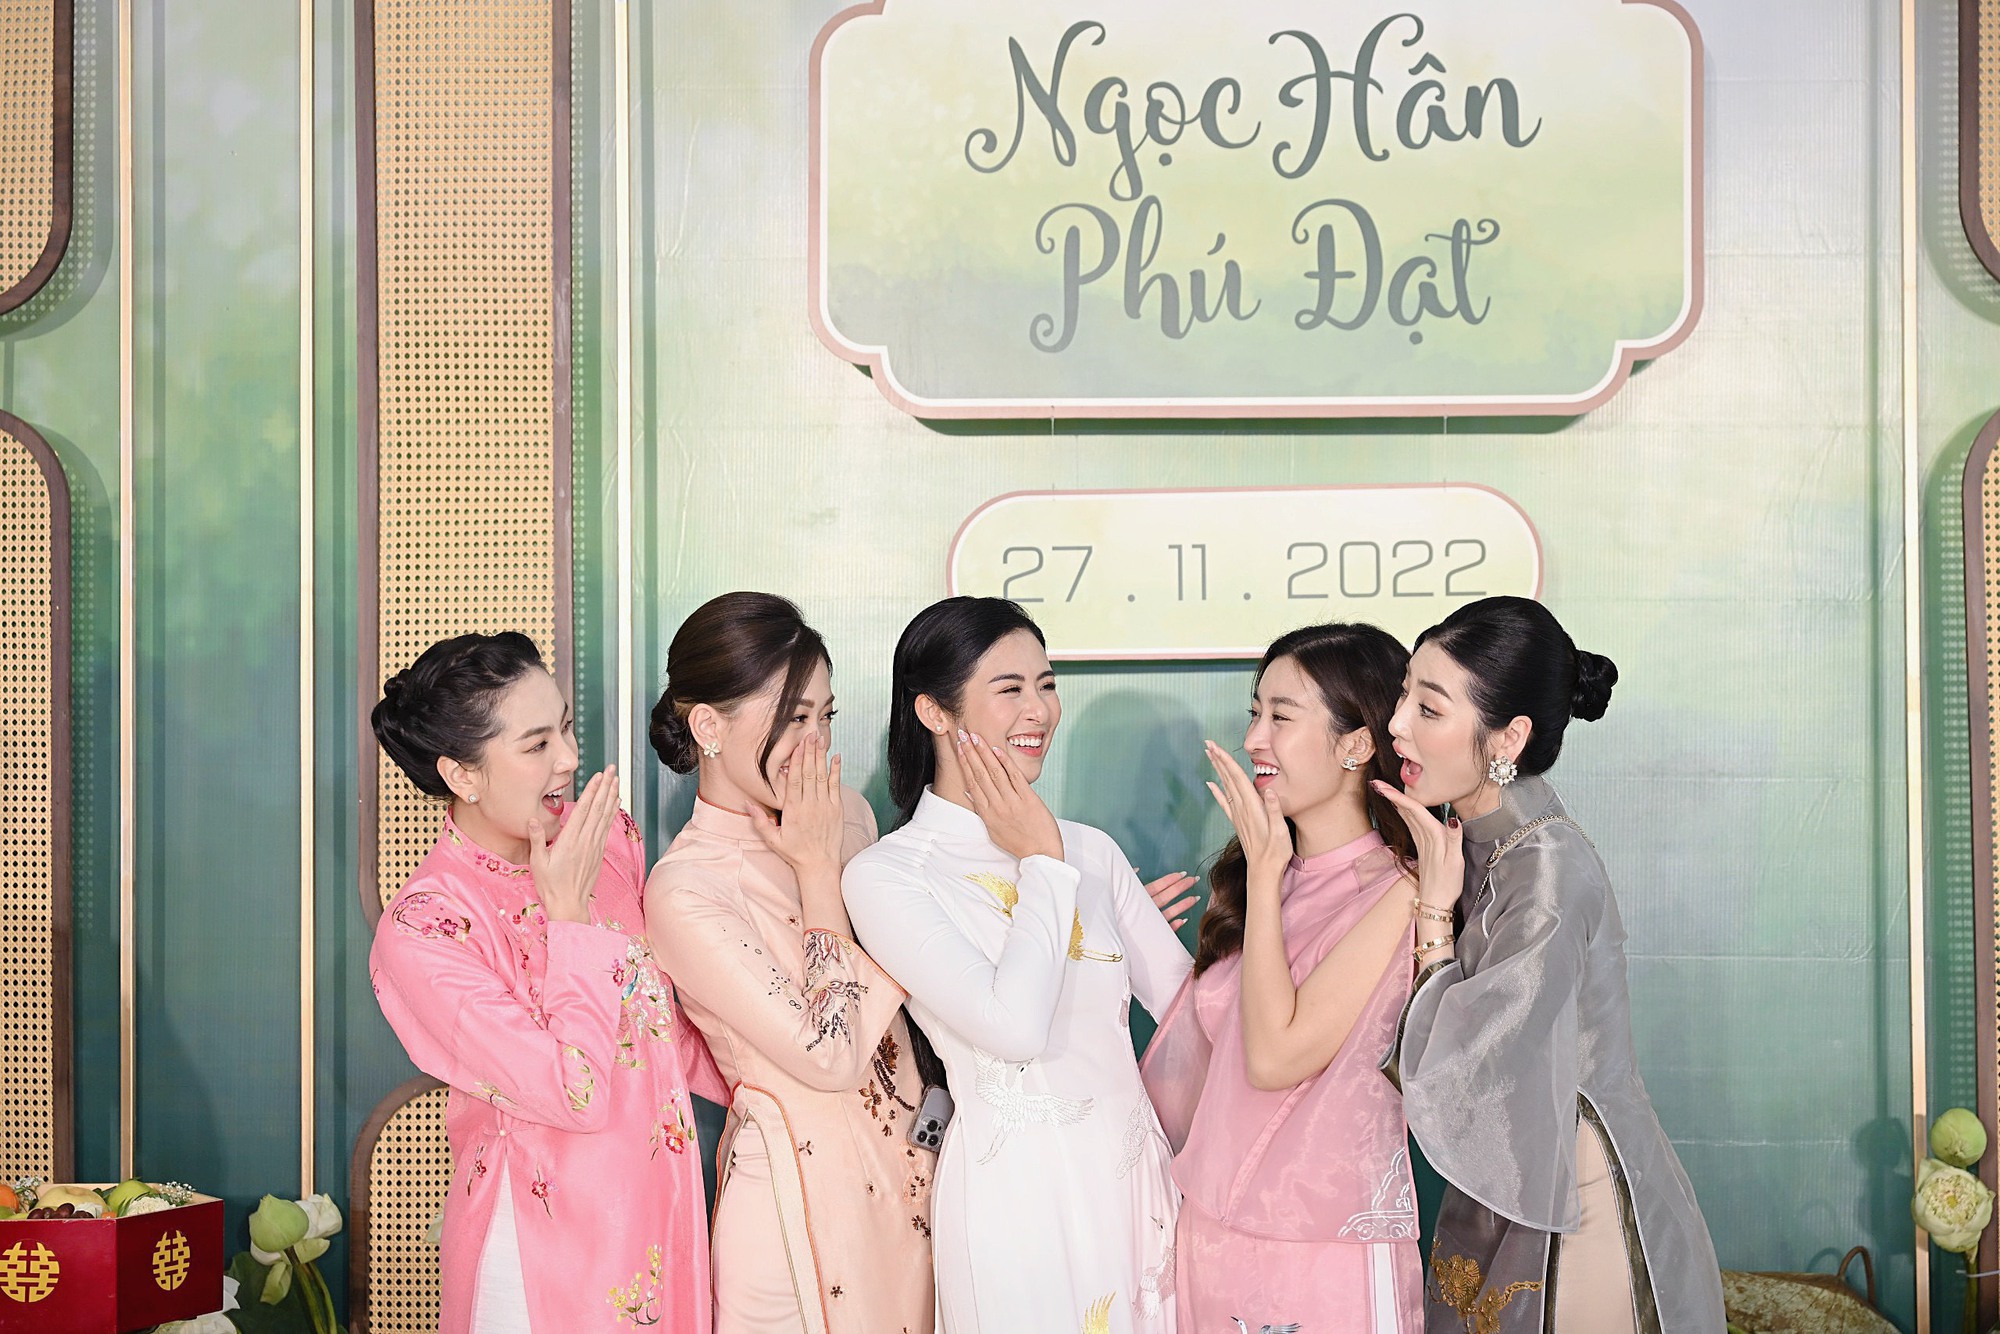 Hoa hậu Ngọc Hân diện áo dài nền nã, sánh đôi cùng chồng sắp cưới trong lễ ăn hỏi tại Hà Nội - Ảnh 5.